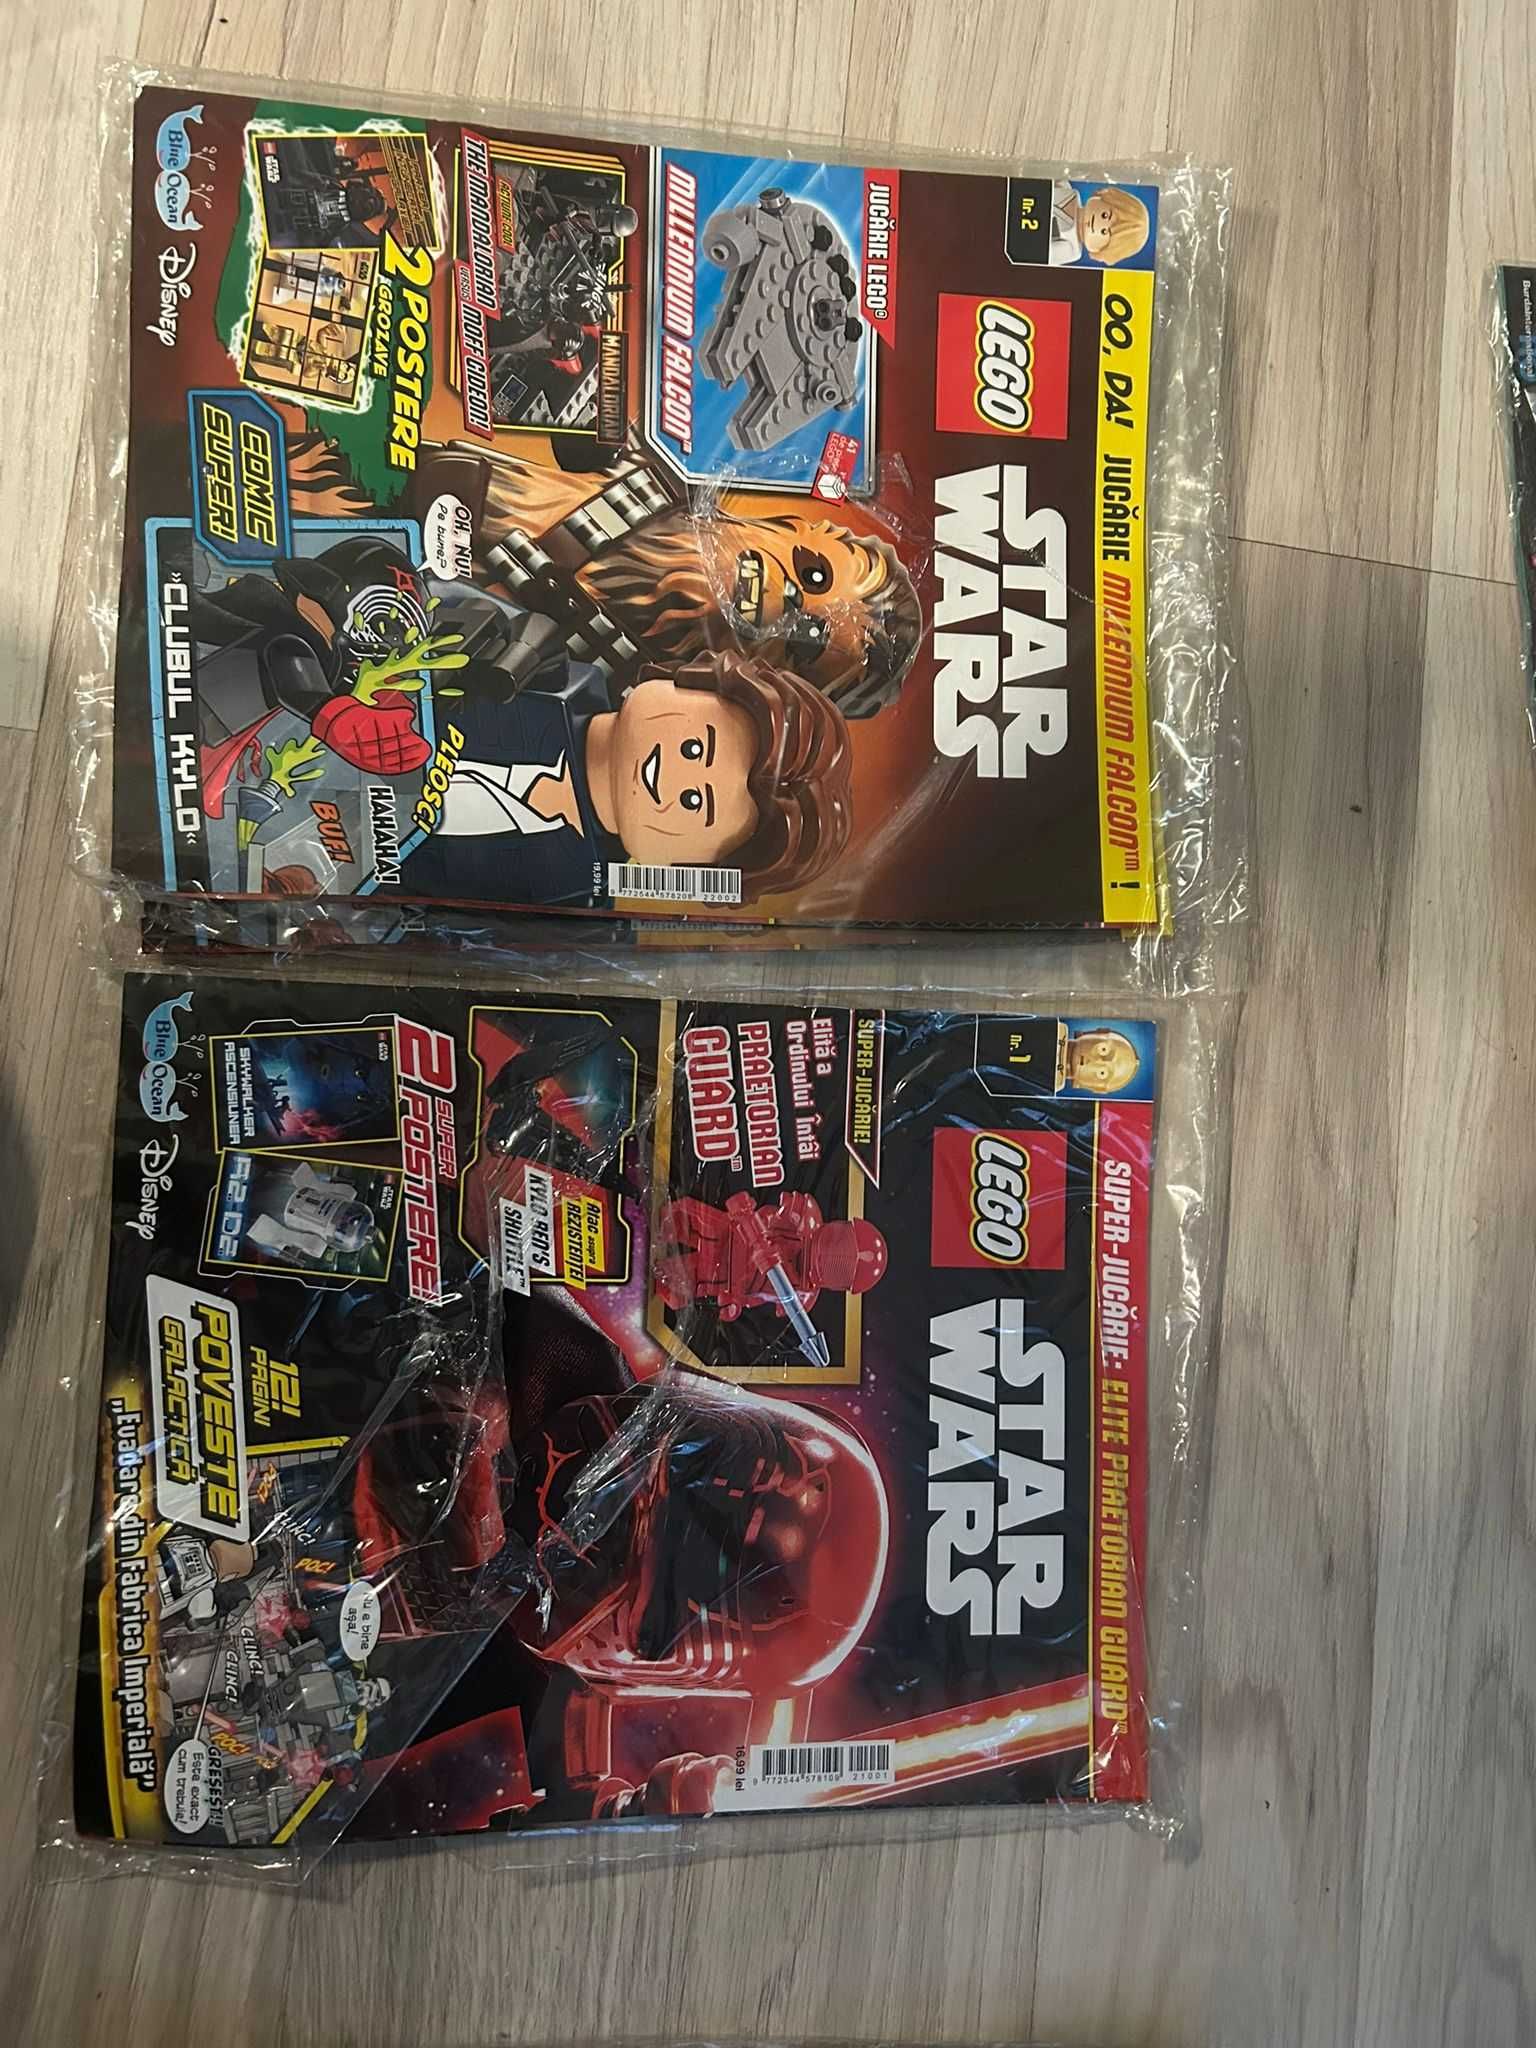 Reviste Lego Starwars, Ninjago, Nexo, City, Batman, jurassic